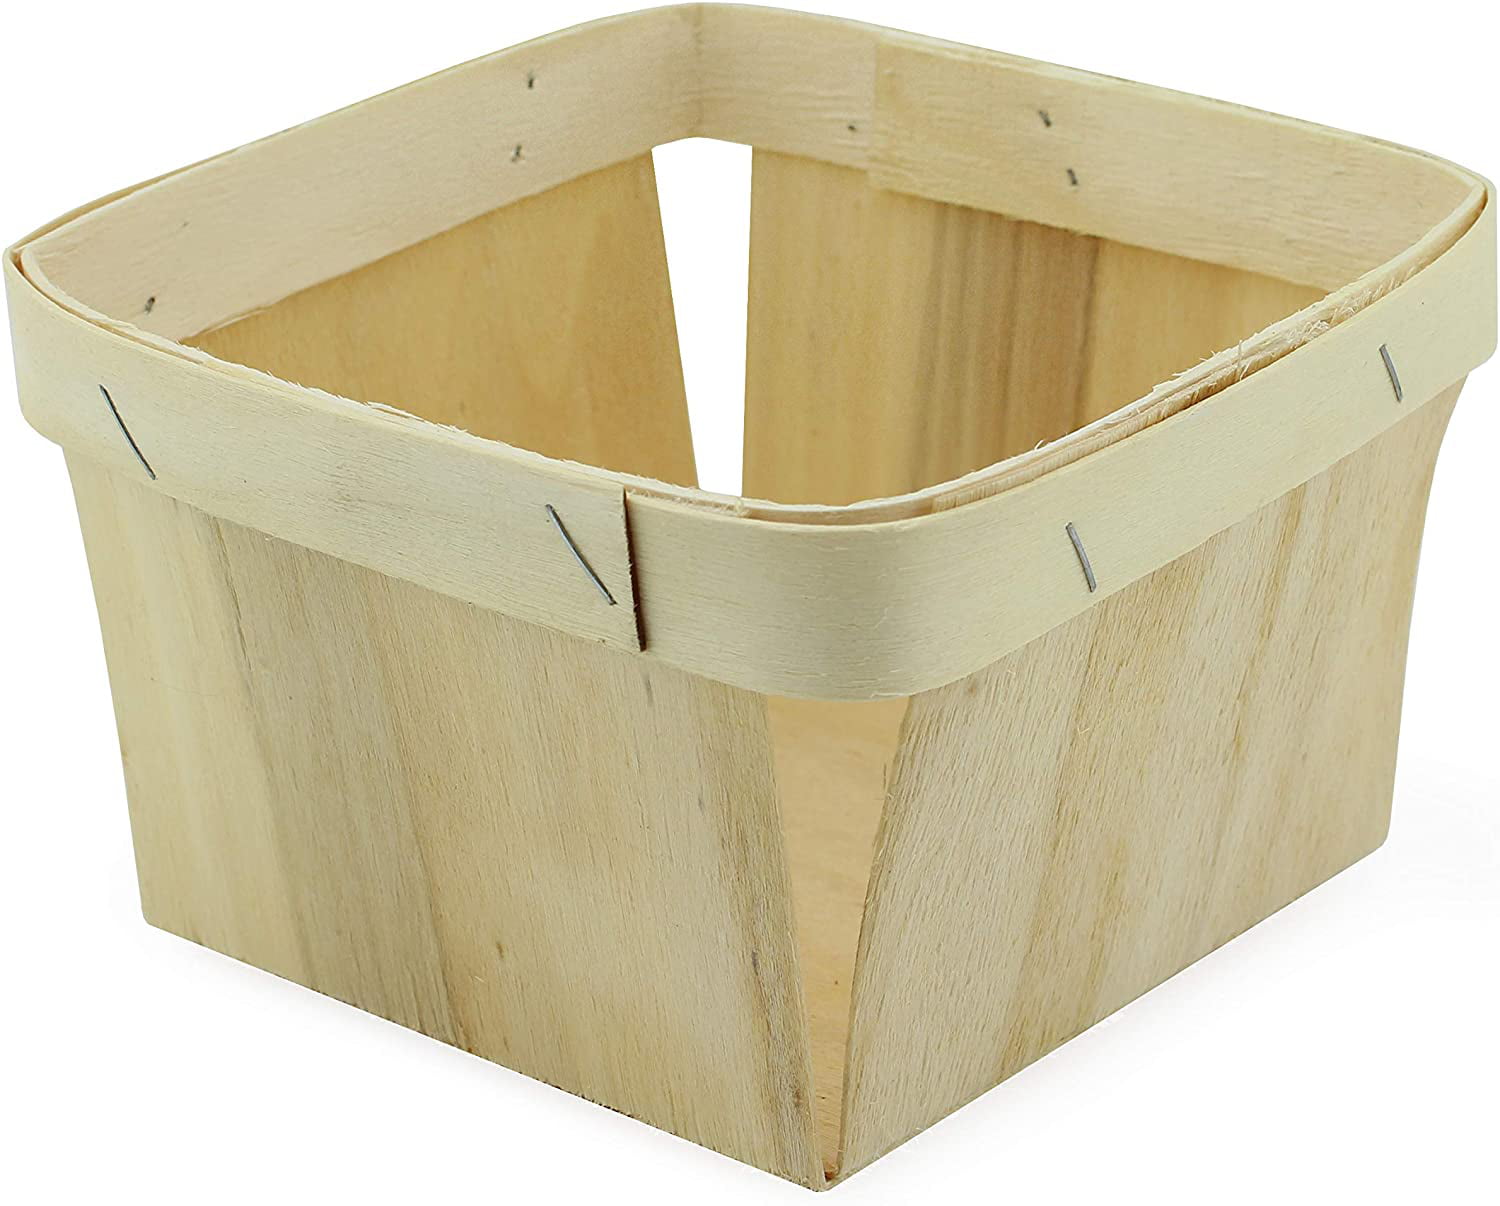 1 Quart Handmade Wooden Berry Baskets 